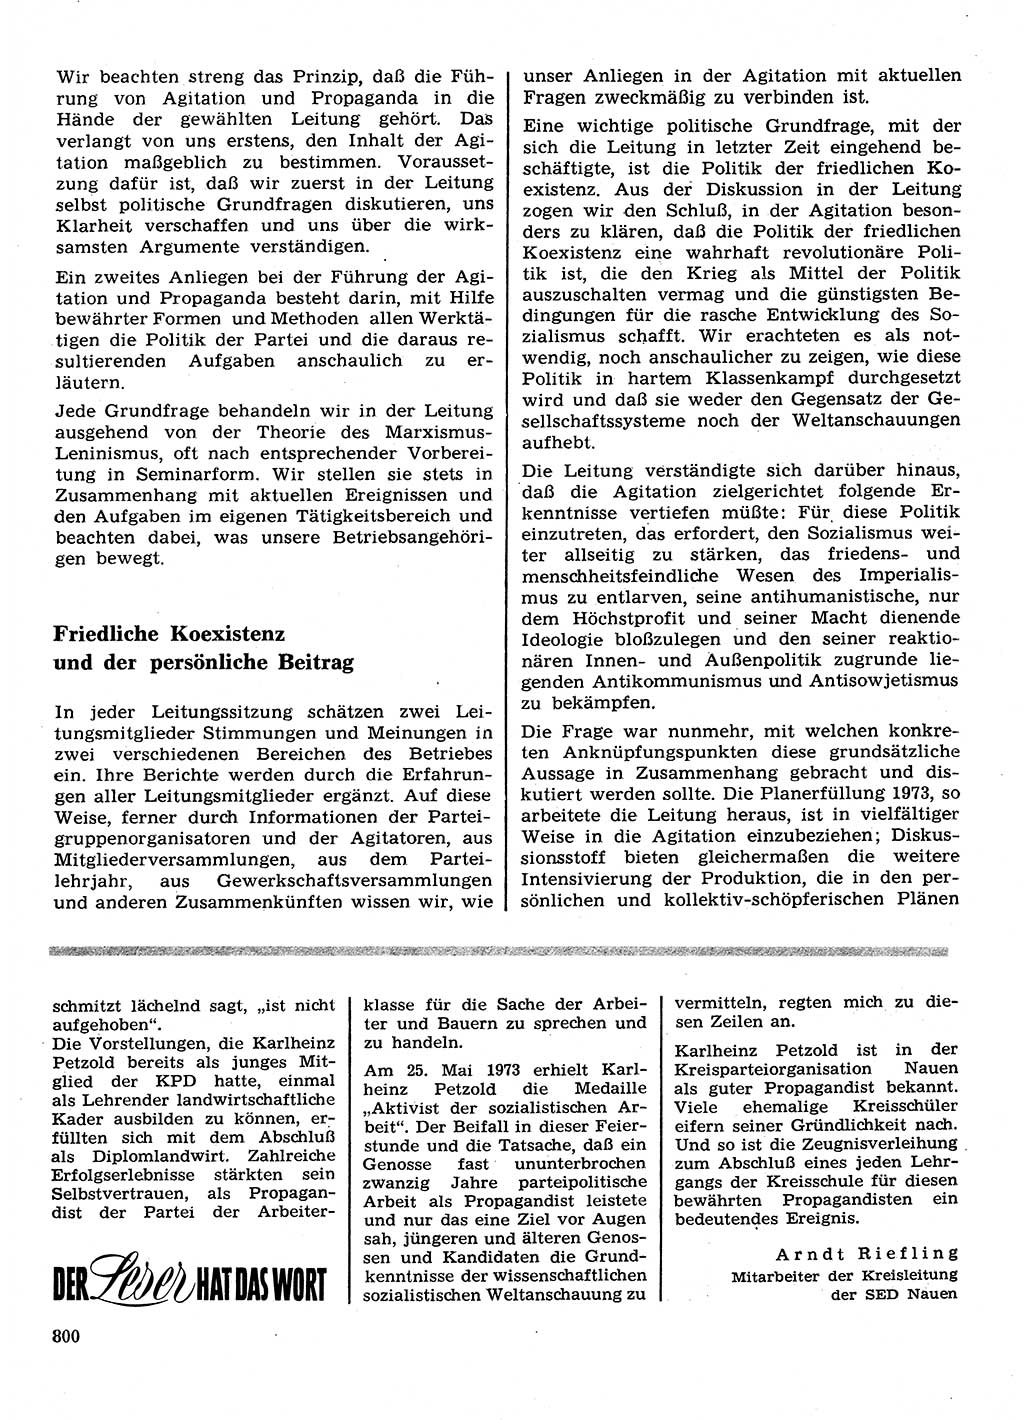 Neuer Weg (NW), Organ des Zentralkomitees (ZK) der SED (Sozialistische Einheitspartei Deutschlands) für Fragen des Parteilebens, 28. Jahrgang [Deutsche Demokratische Republik (DDR)] 1973, Seite 800 (NW ZK SED DDR 1973, S. 800)